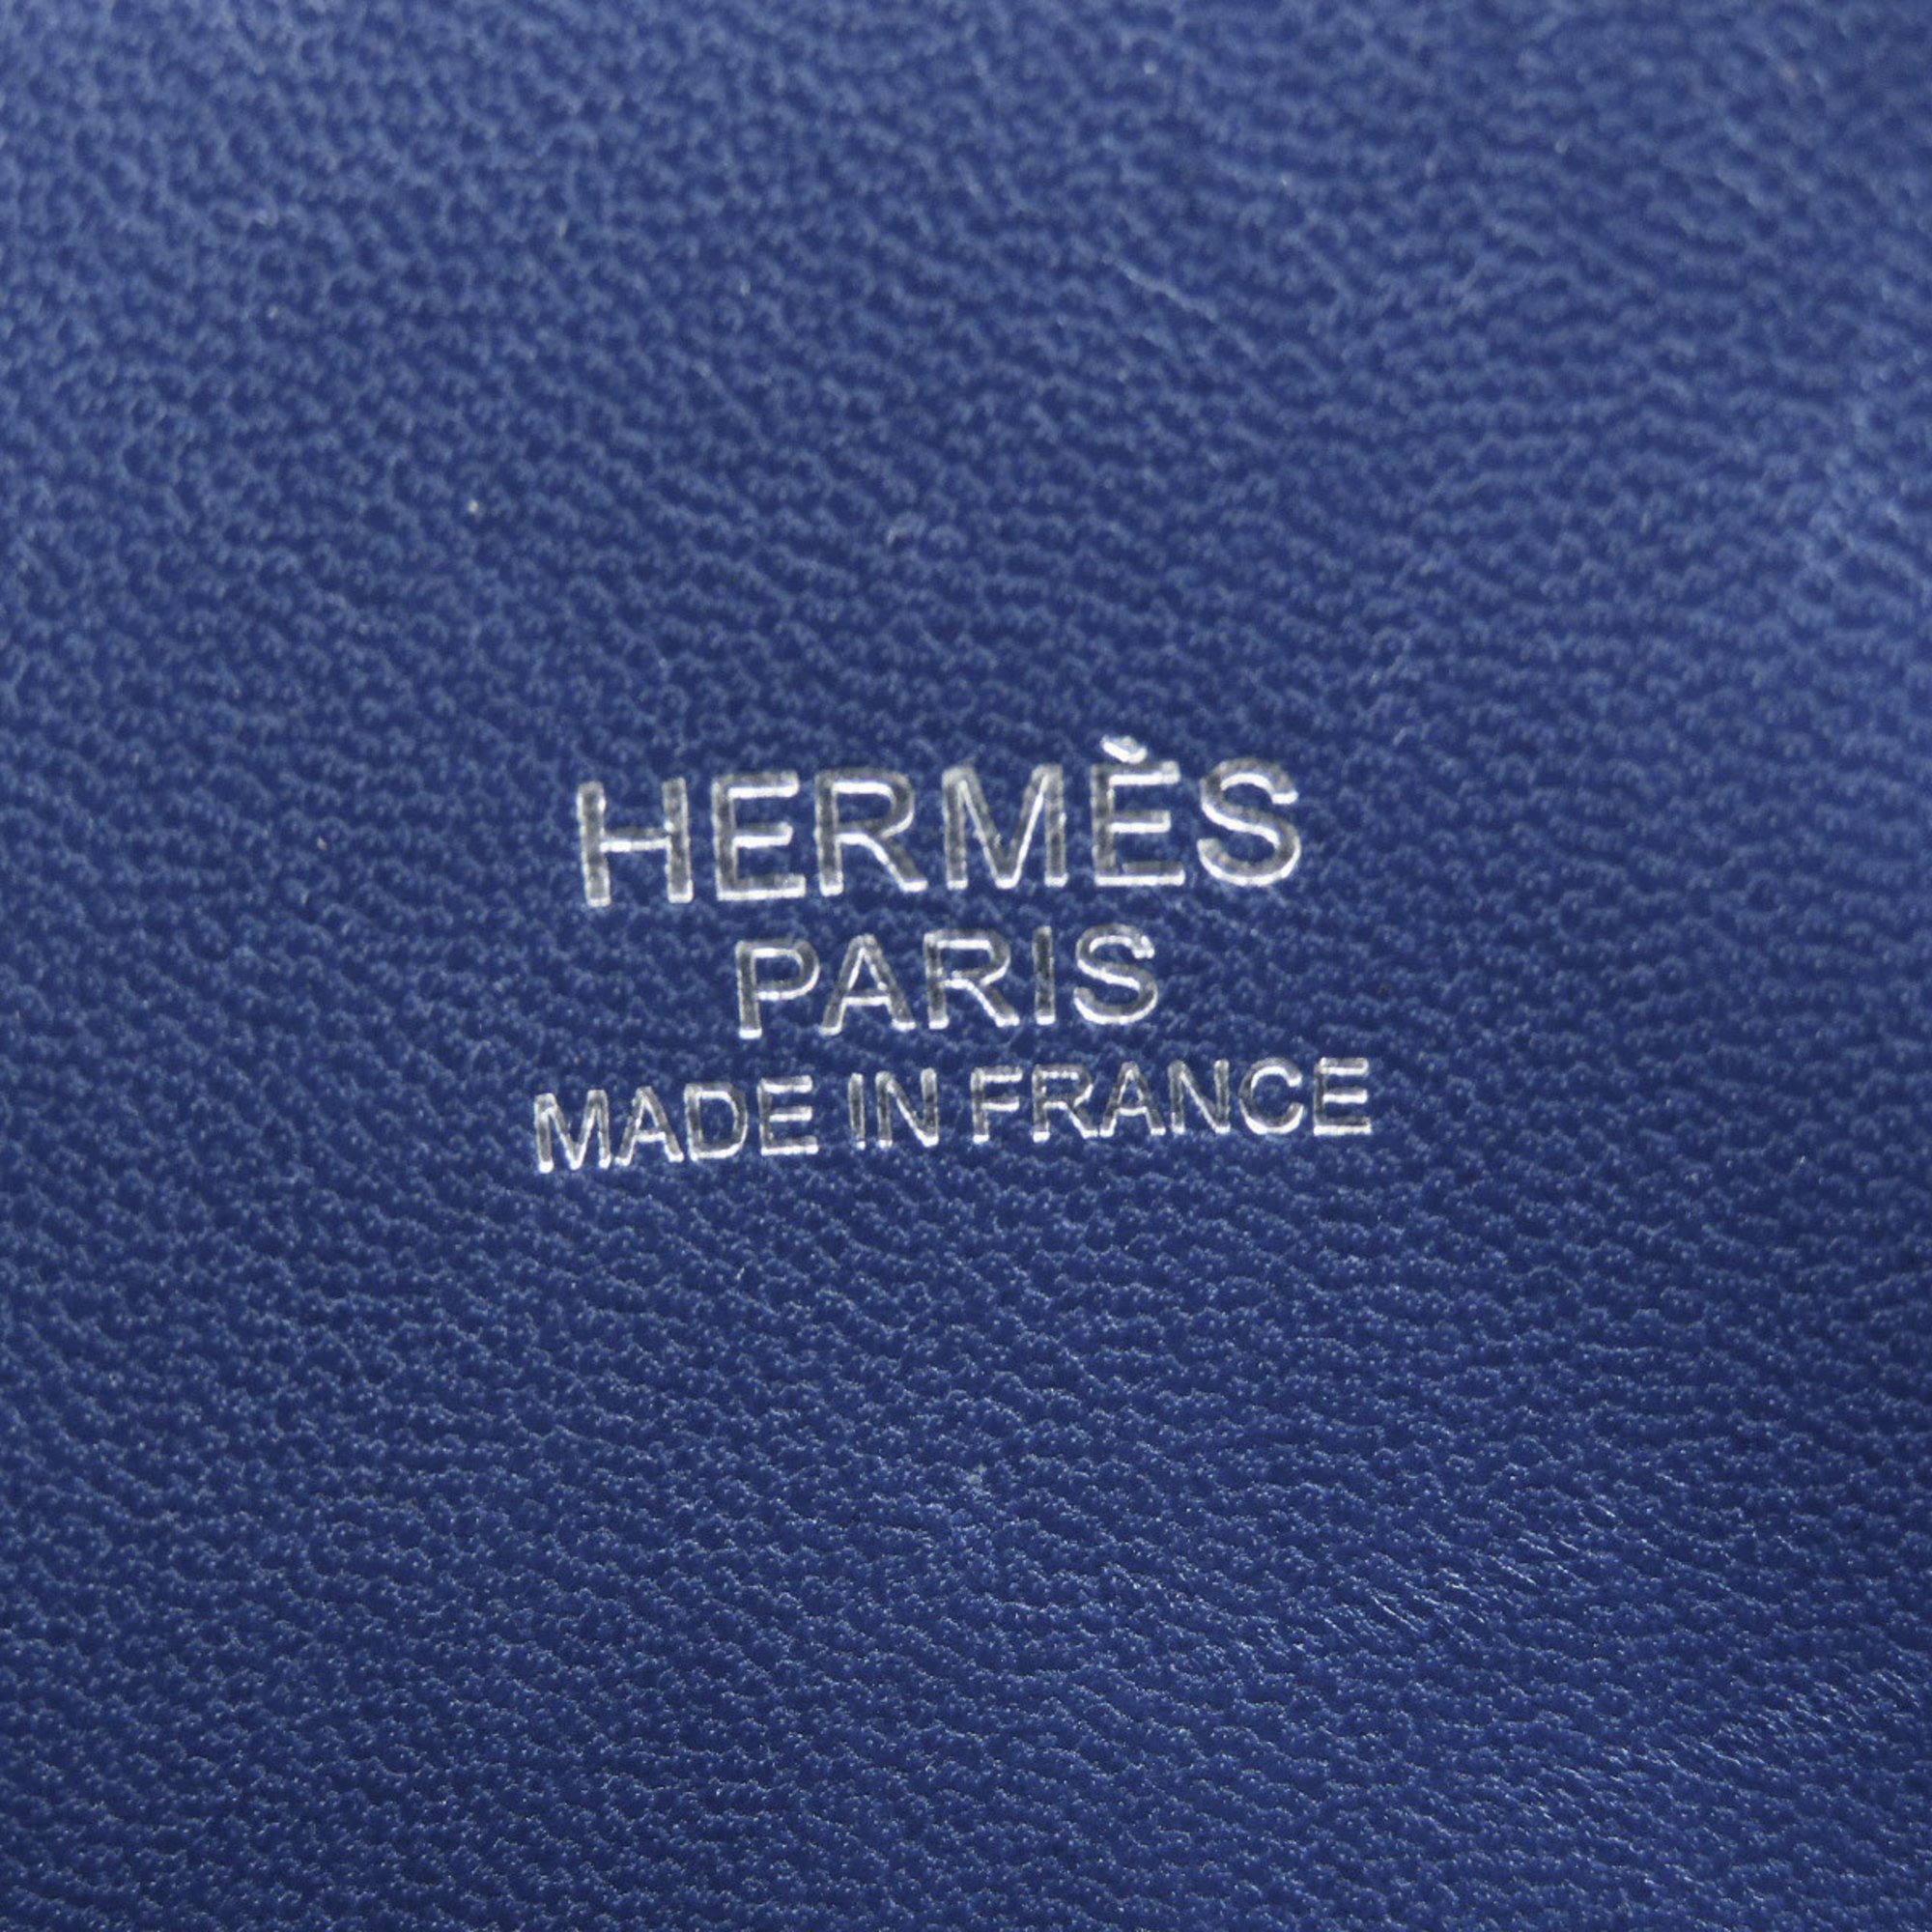 Hermes Bolide 31 Blue Ankle Handbag Taurillon Women's